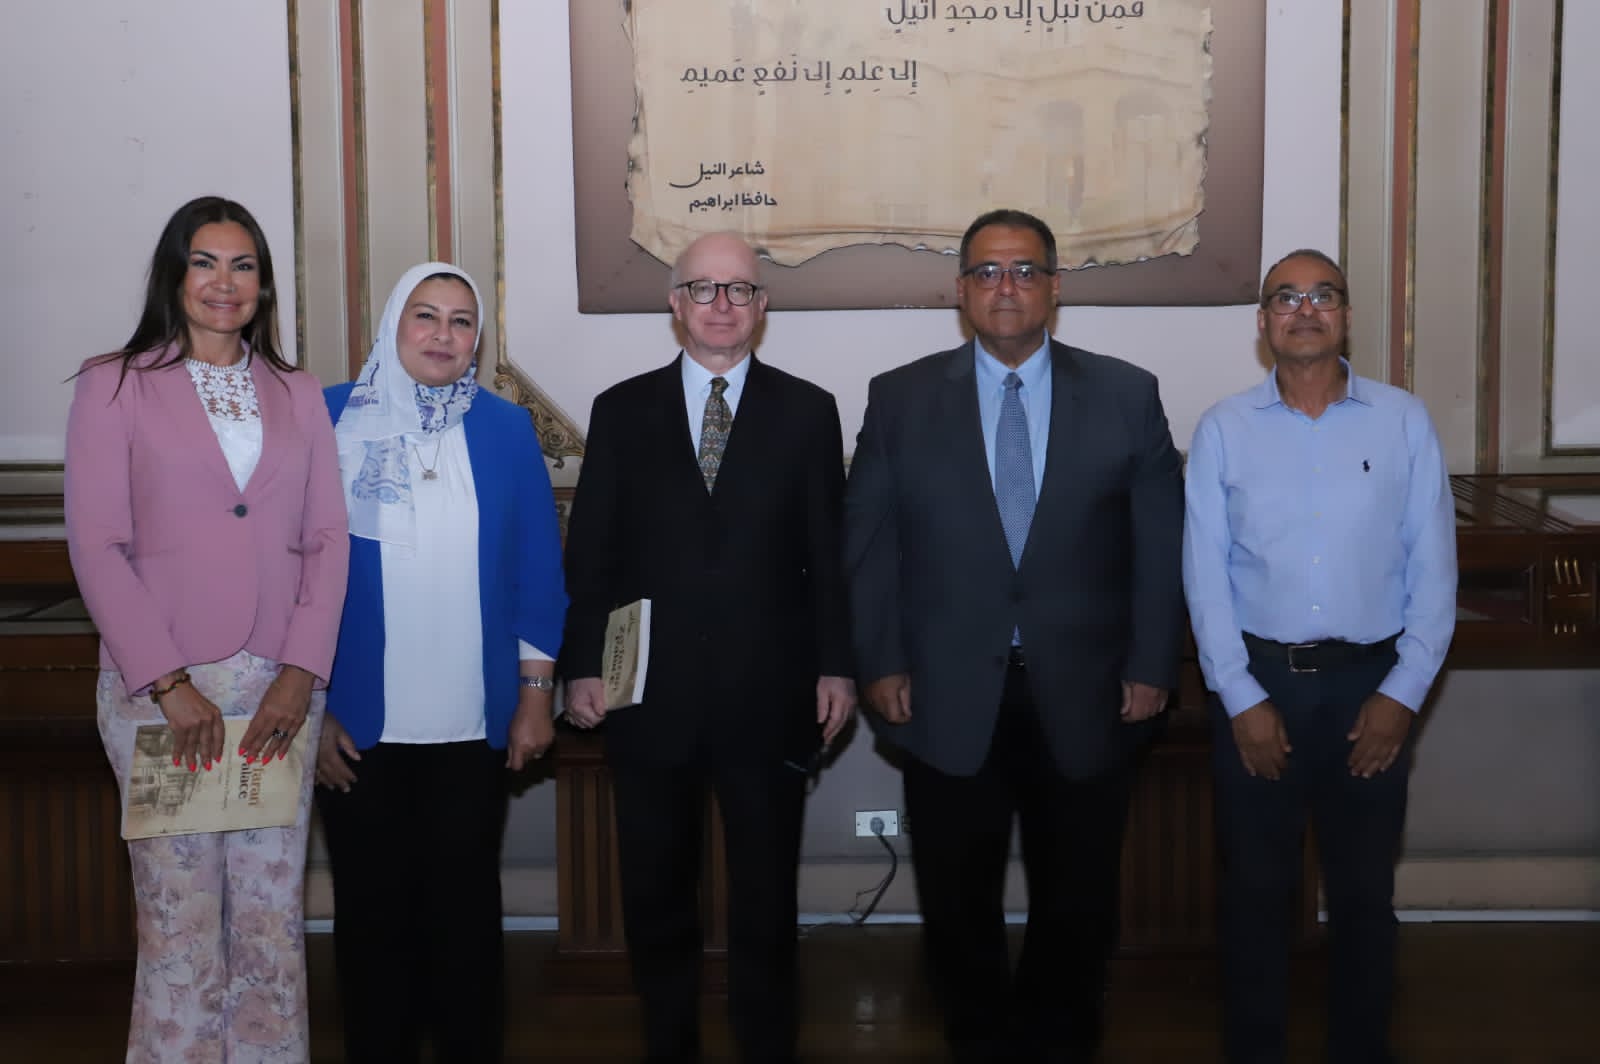 نائب رئيس جامعة عين شمس يستقبل سفير البرتغال والملحق الثقافي